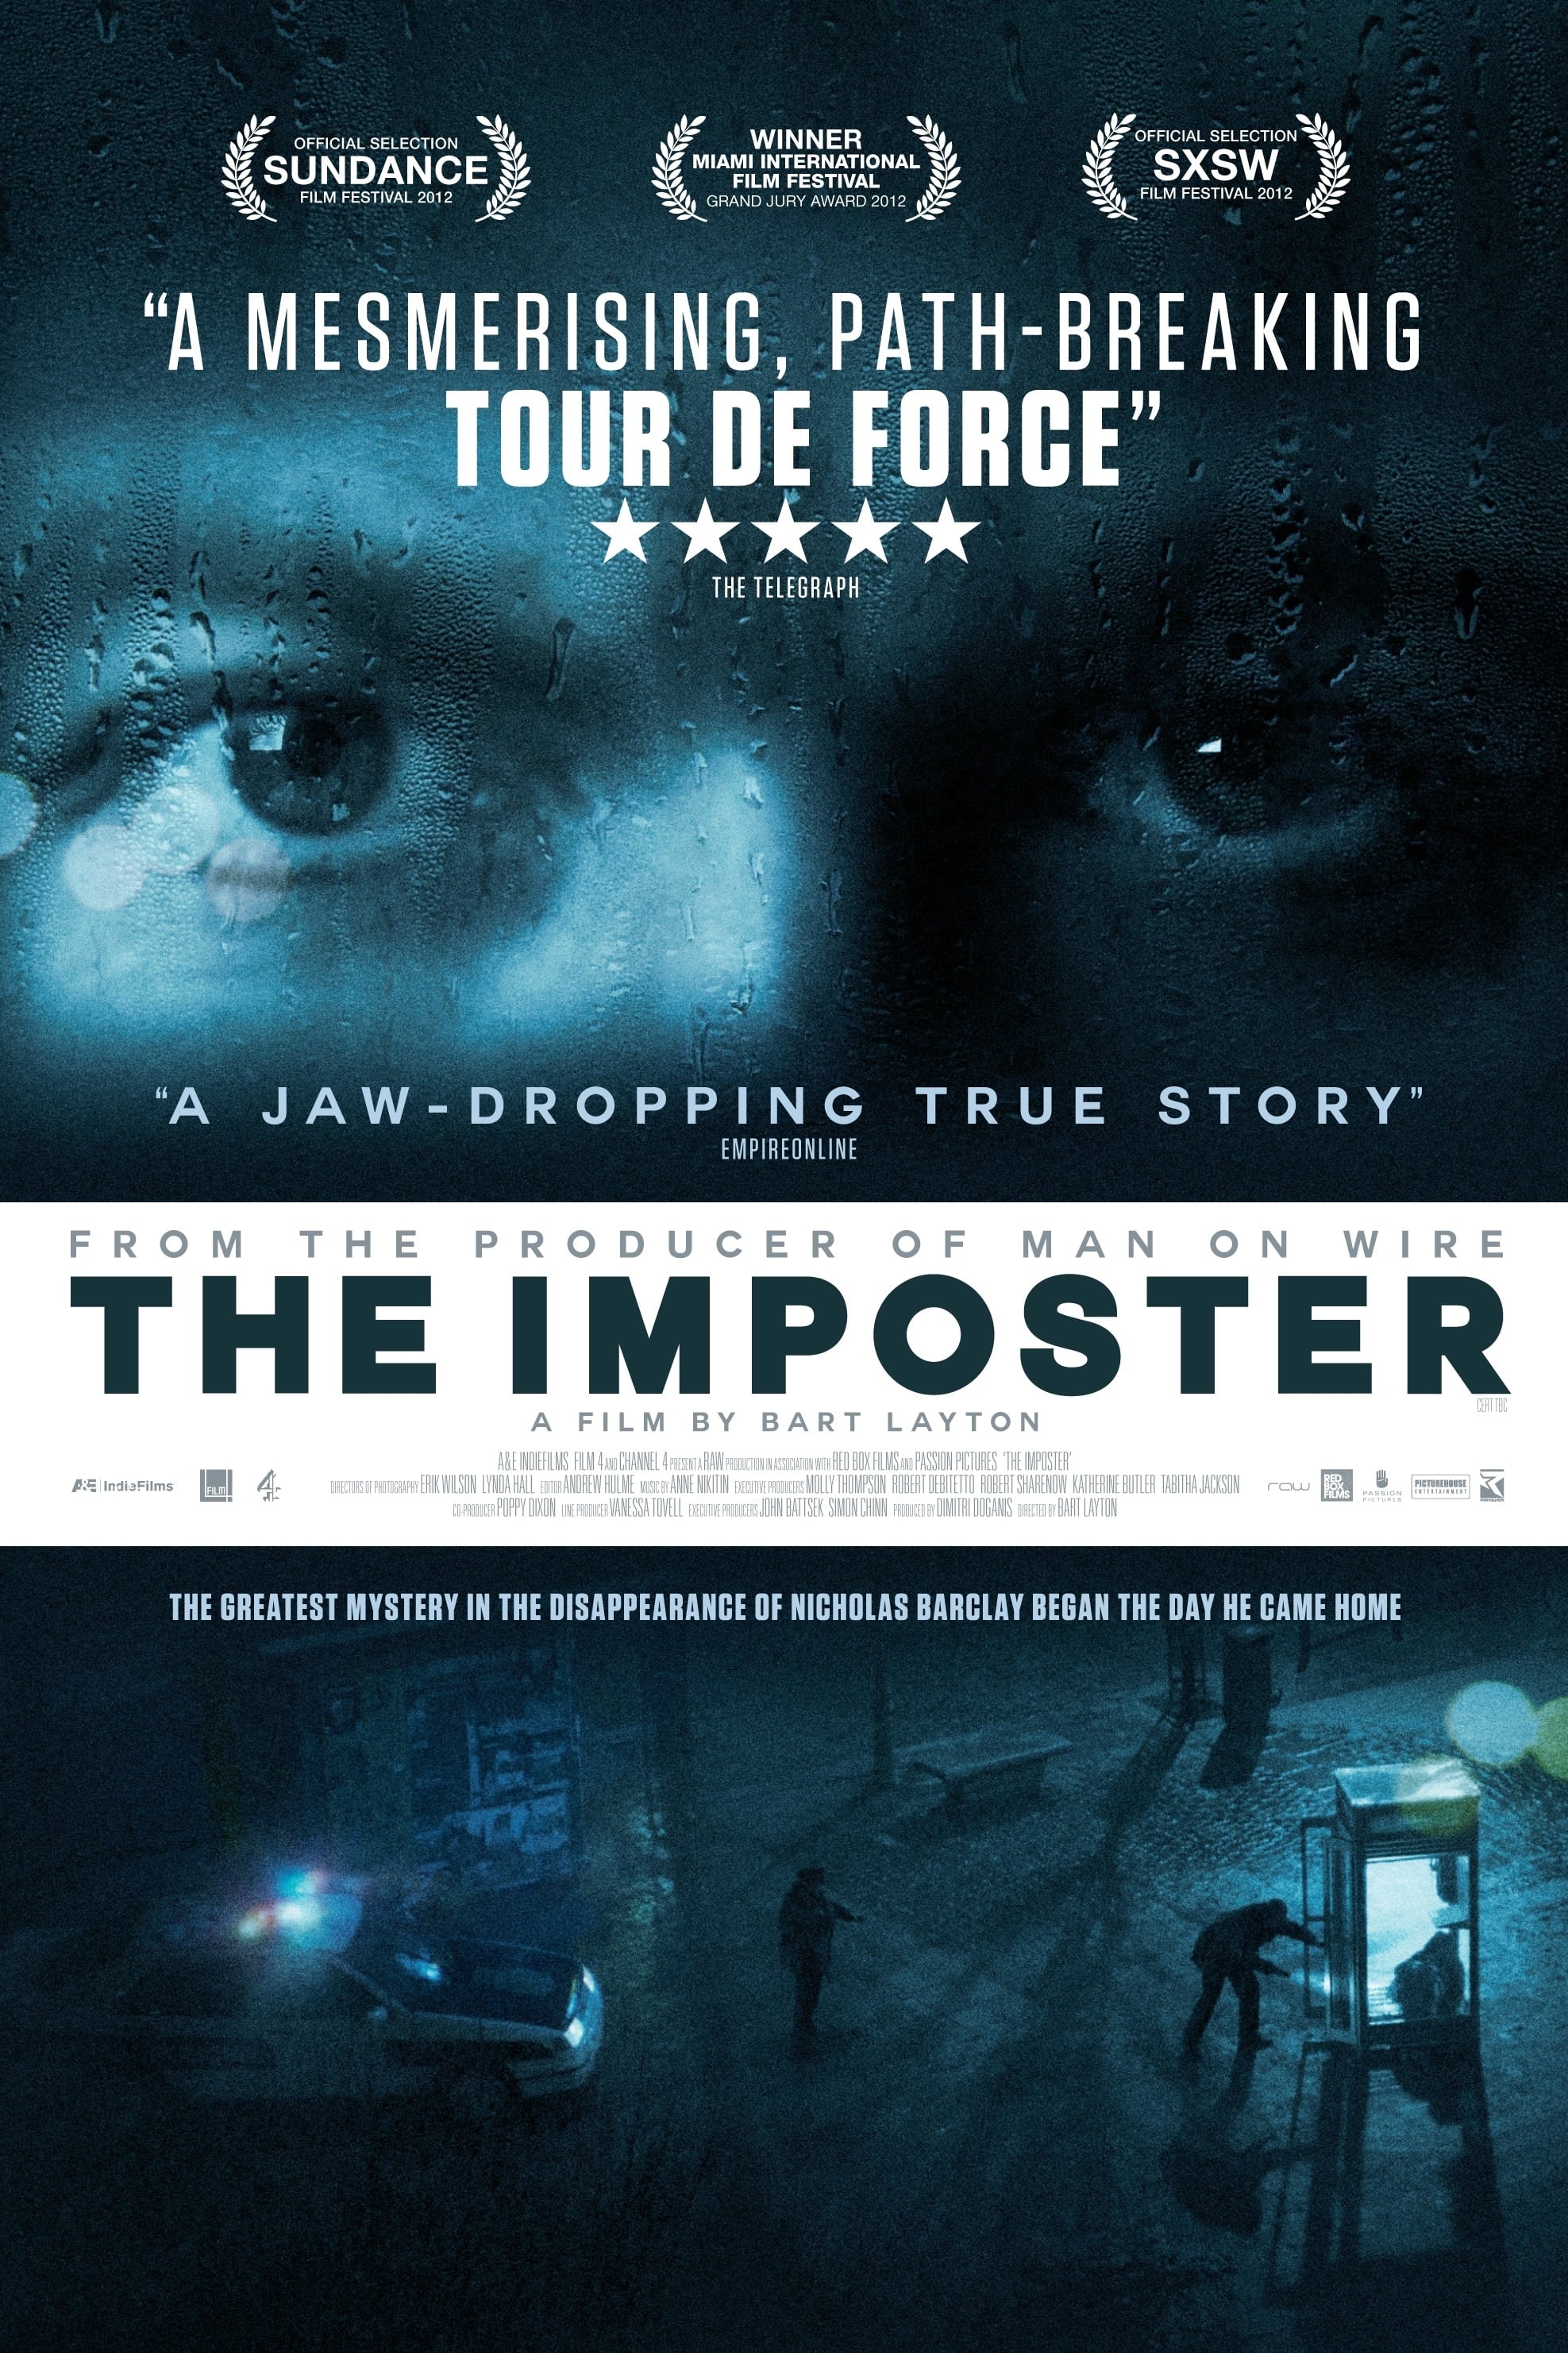 L'Impostore - The Imposter film